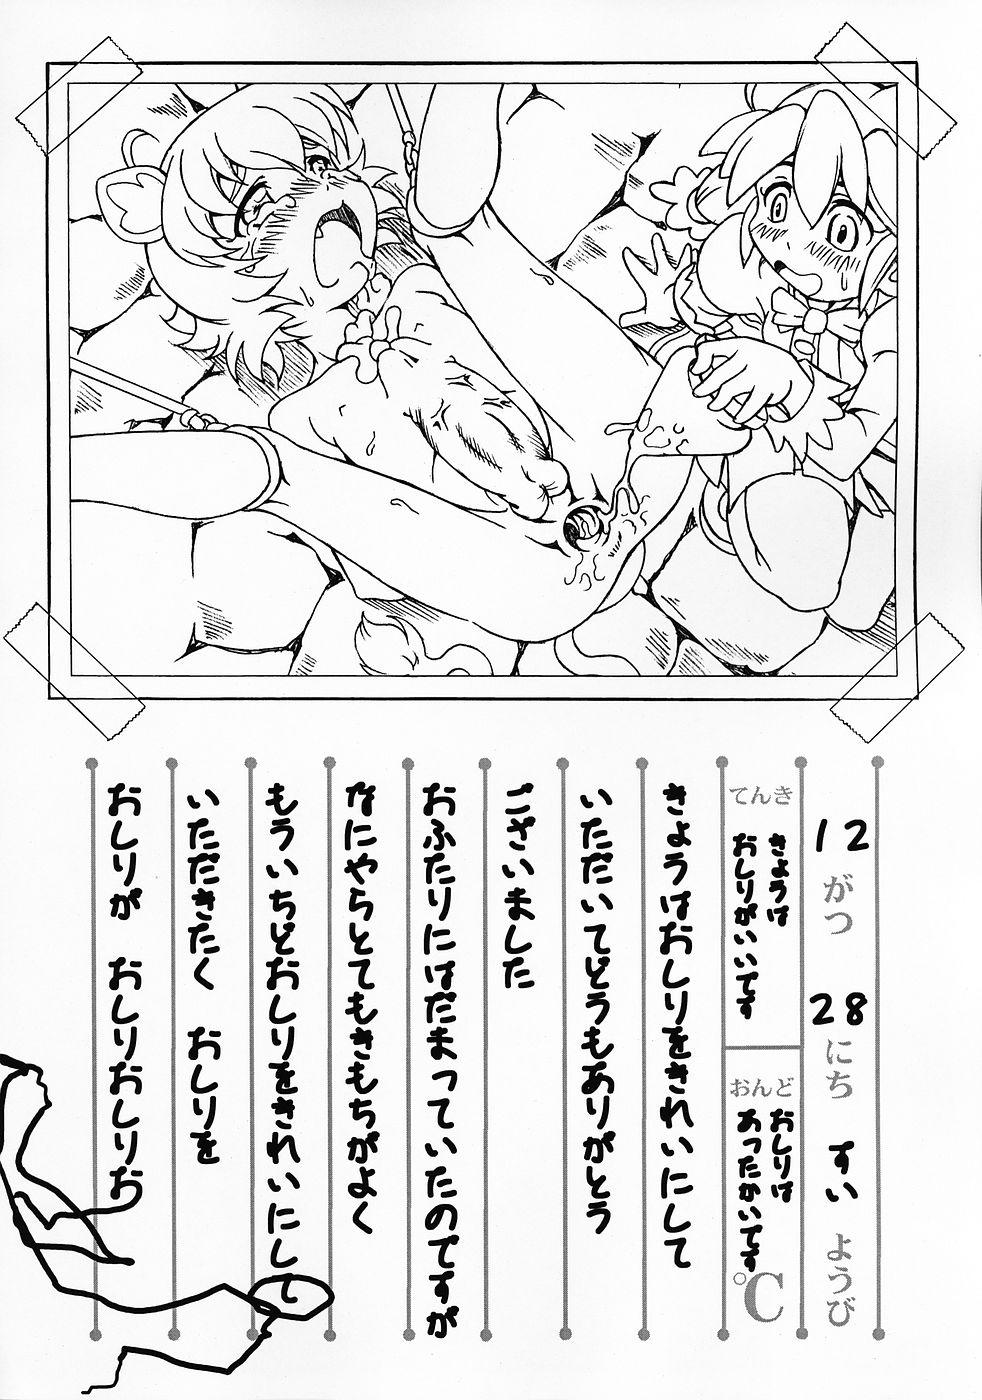 Submission Rorinoko Tawashi - Fushigiboshi no futagohime Celebrity Porn - Page 9